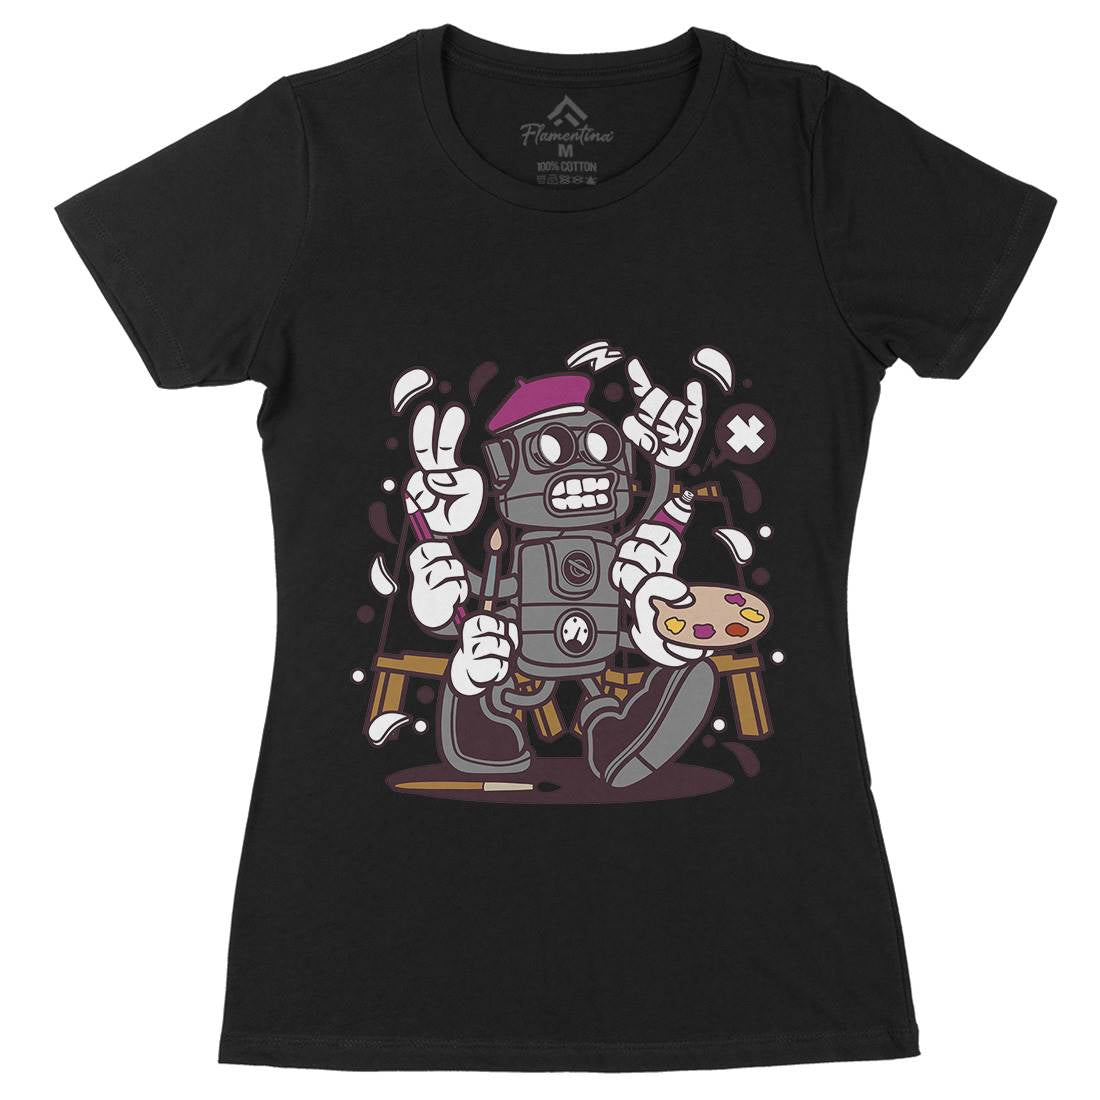 Painter Robot Womens Organic Crew Neck T-Shirt Retro C182